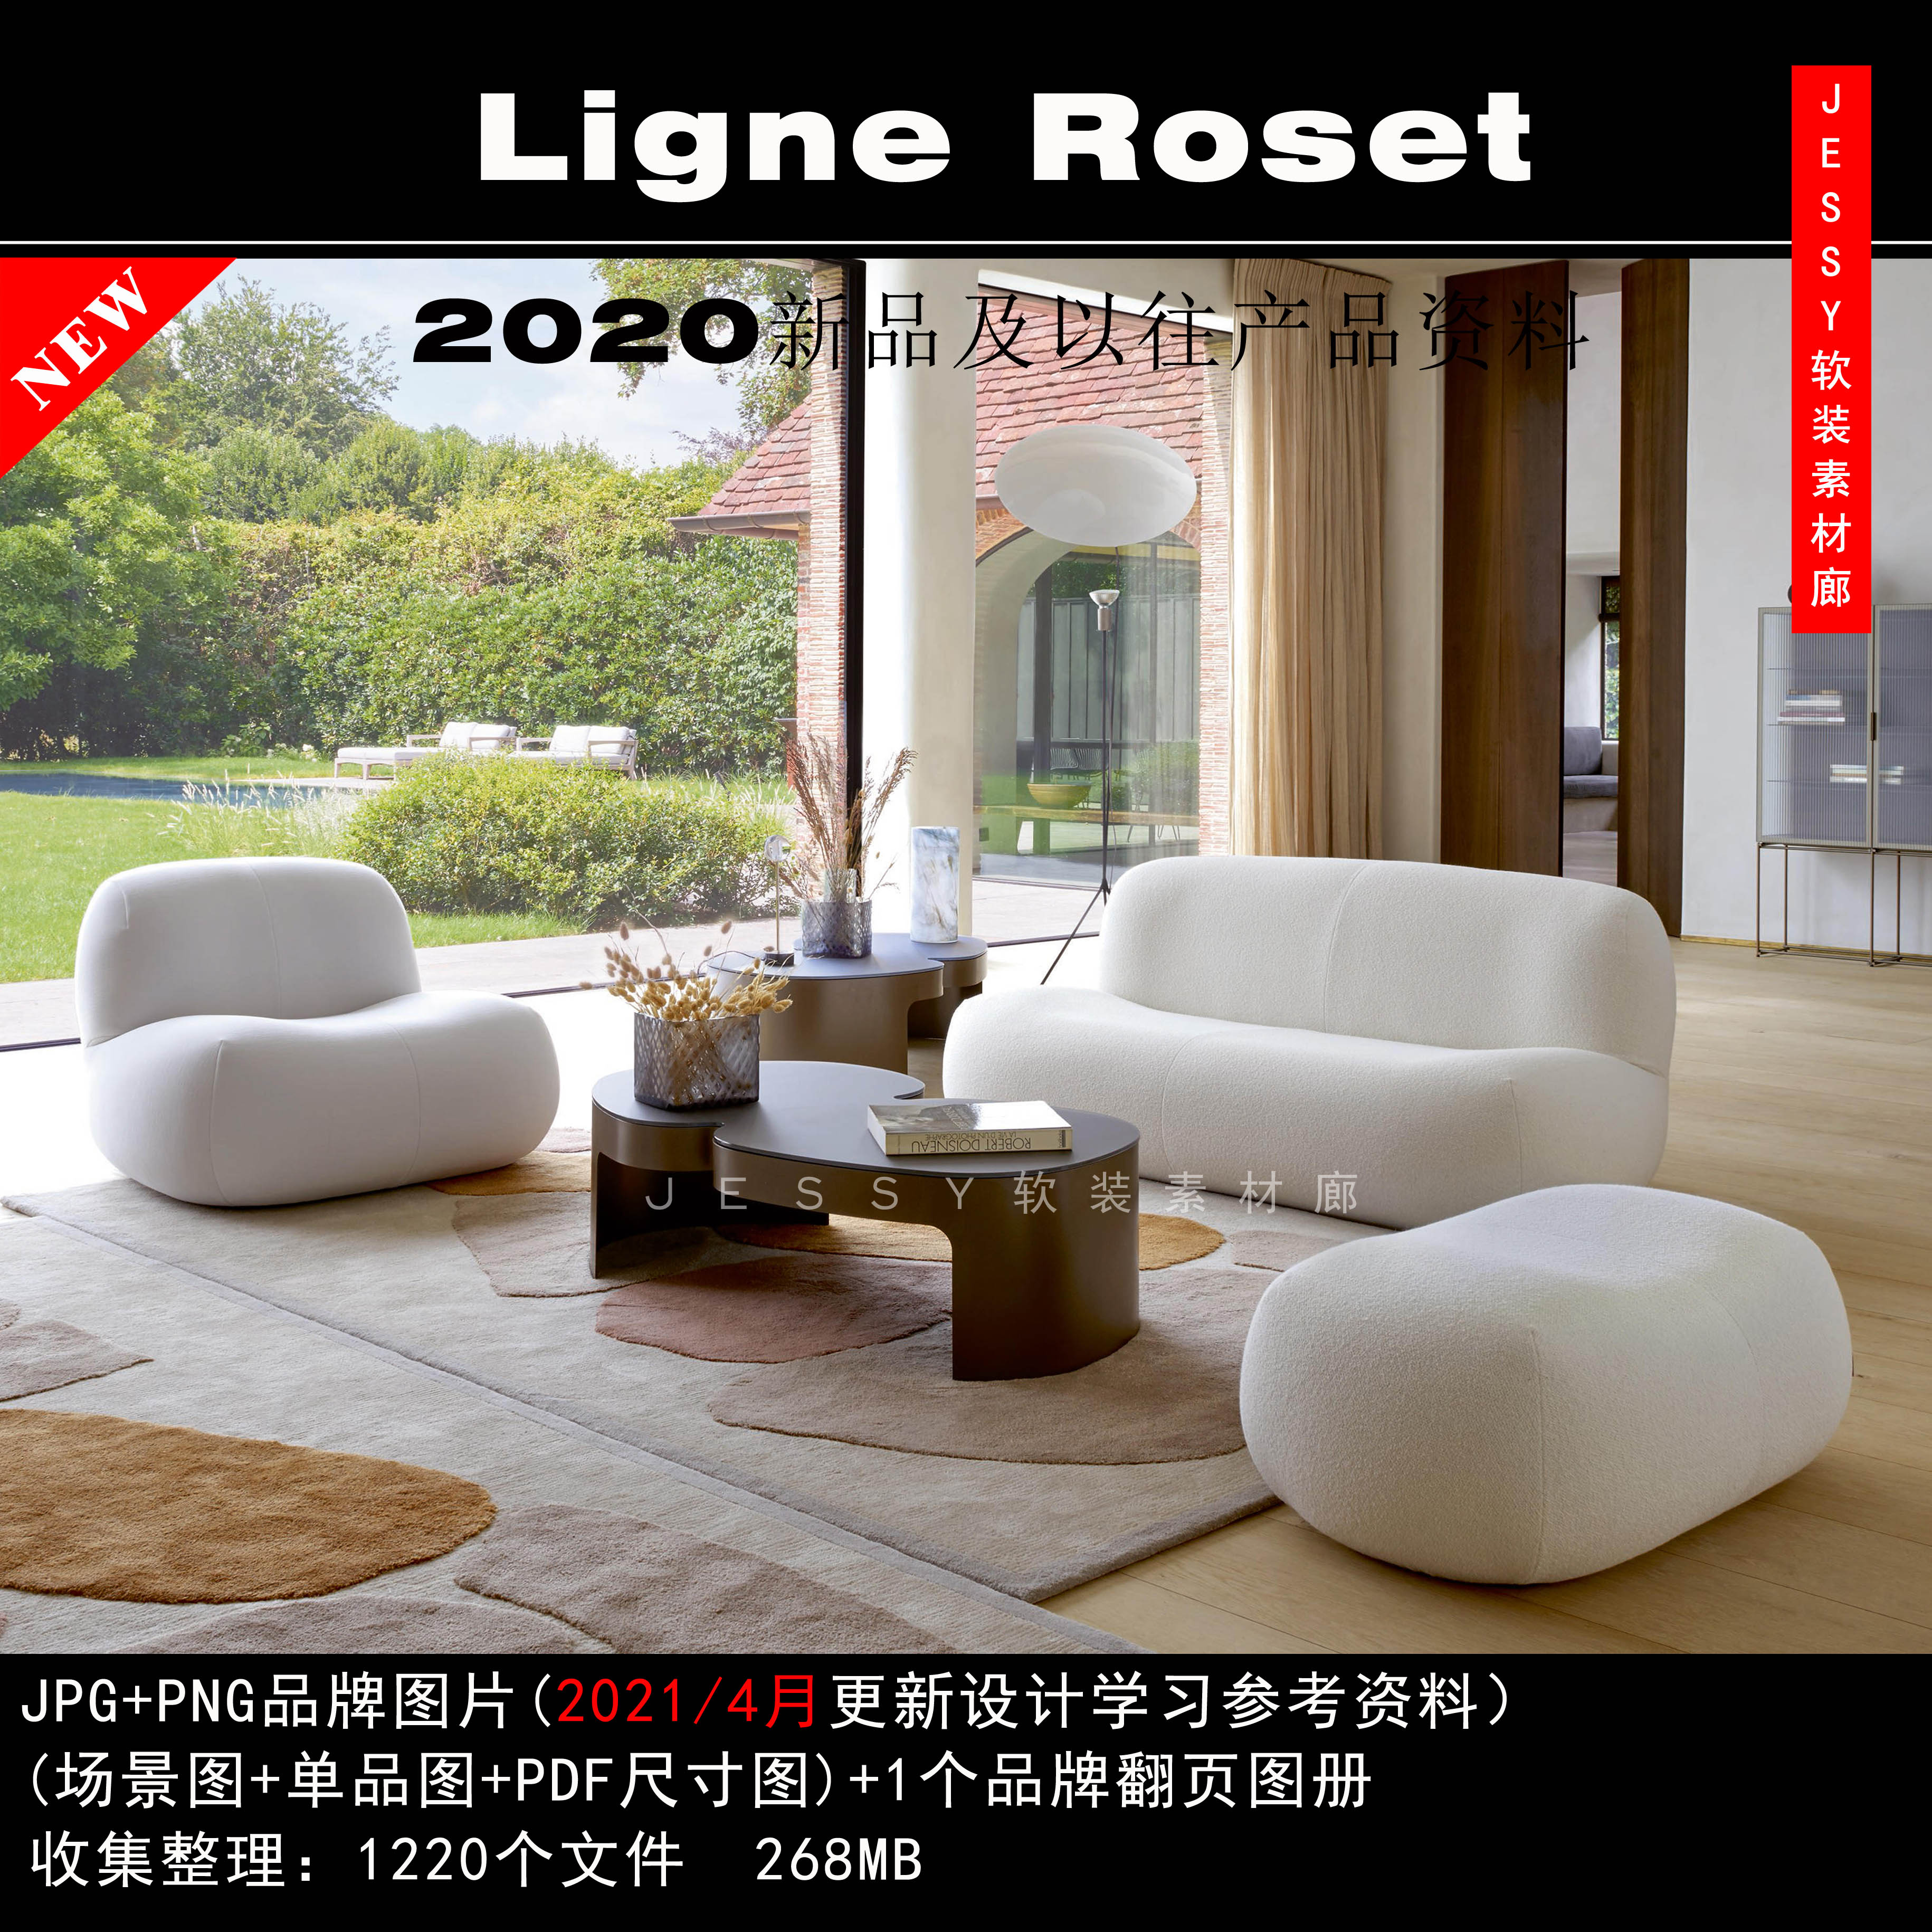 法国写意空间ligne roset2020新品家具素材软装设计图片参考资料